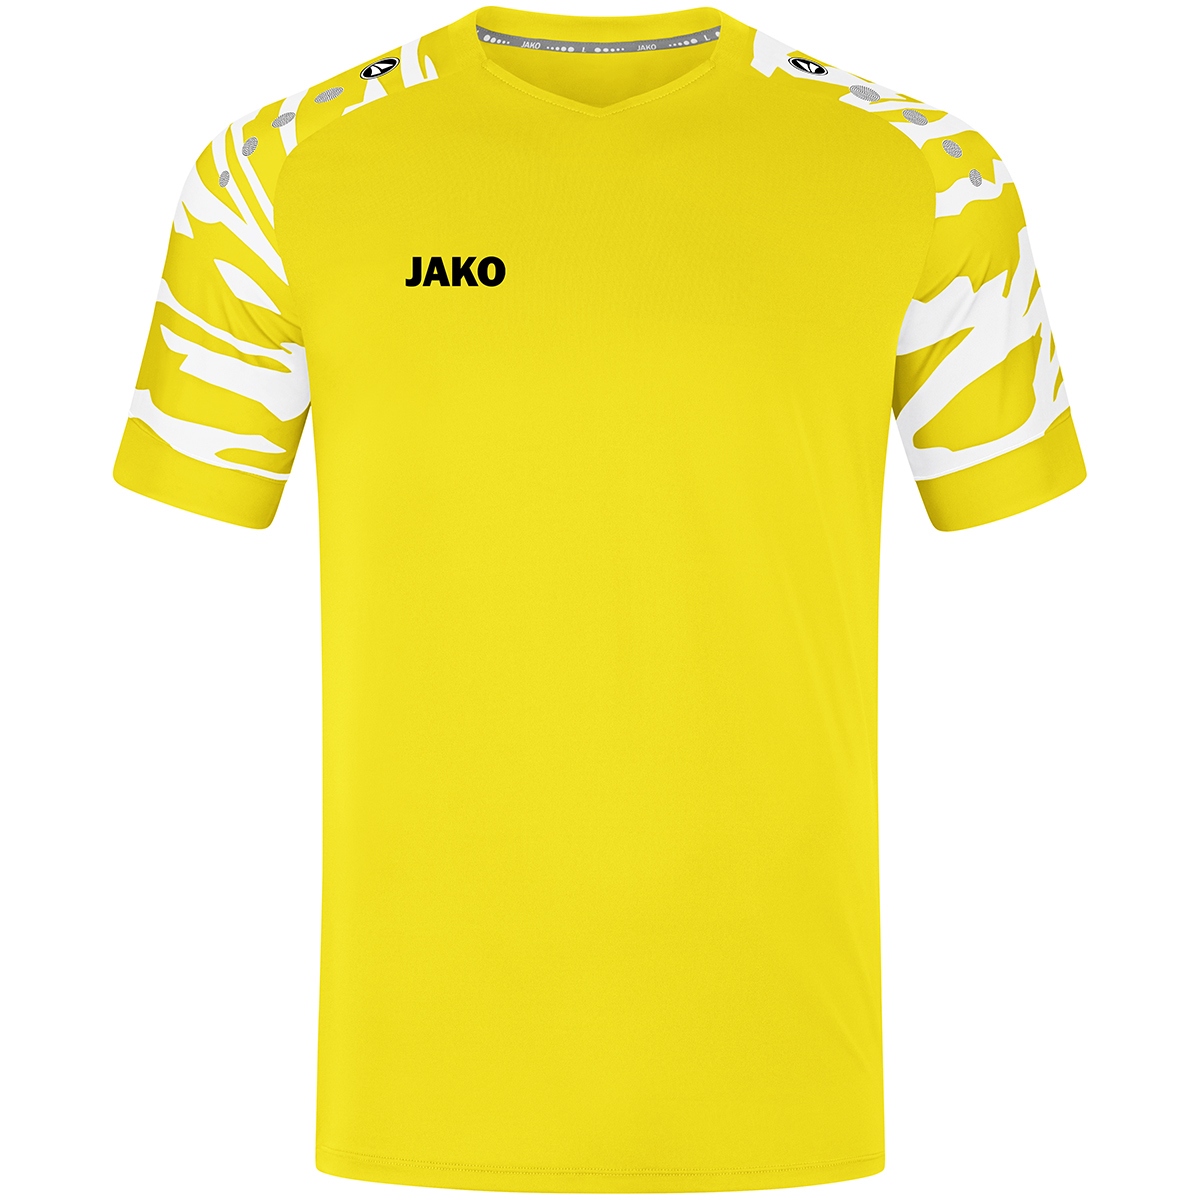 JAKO Shirt Wild KM 4244-303 product